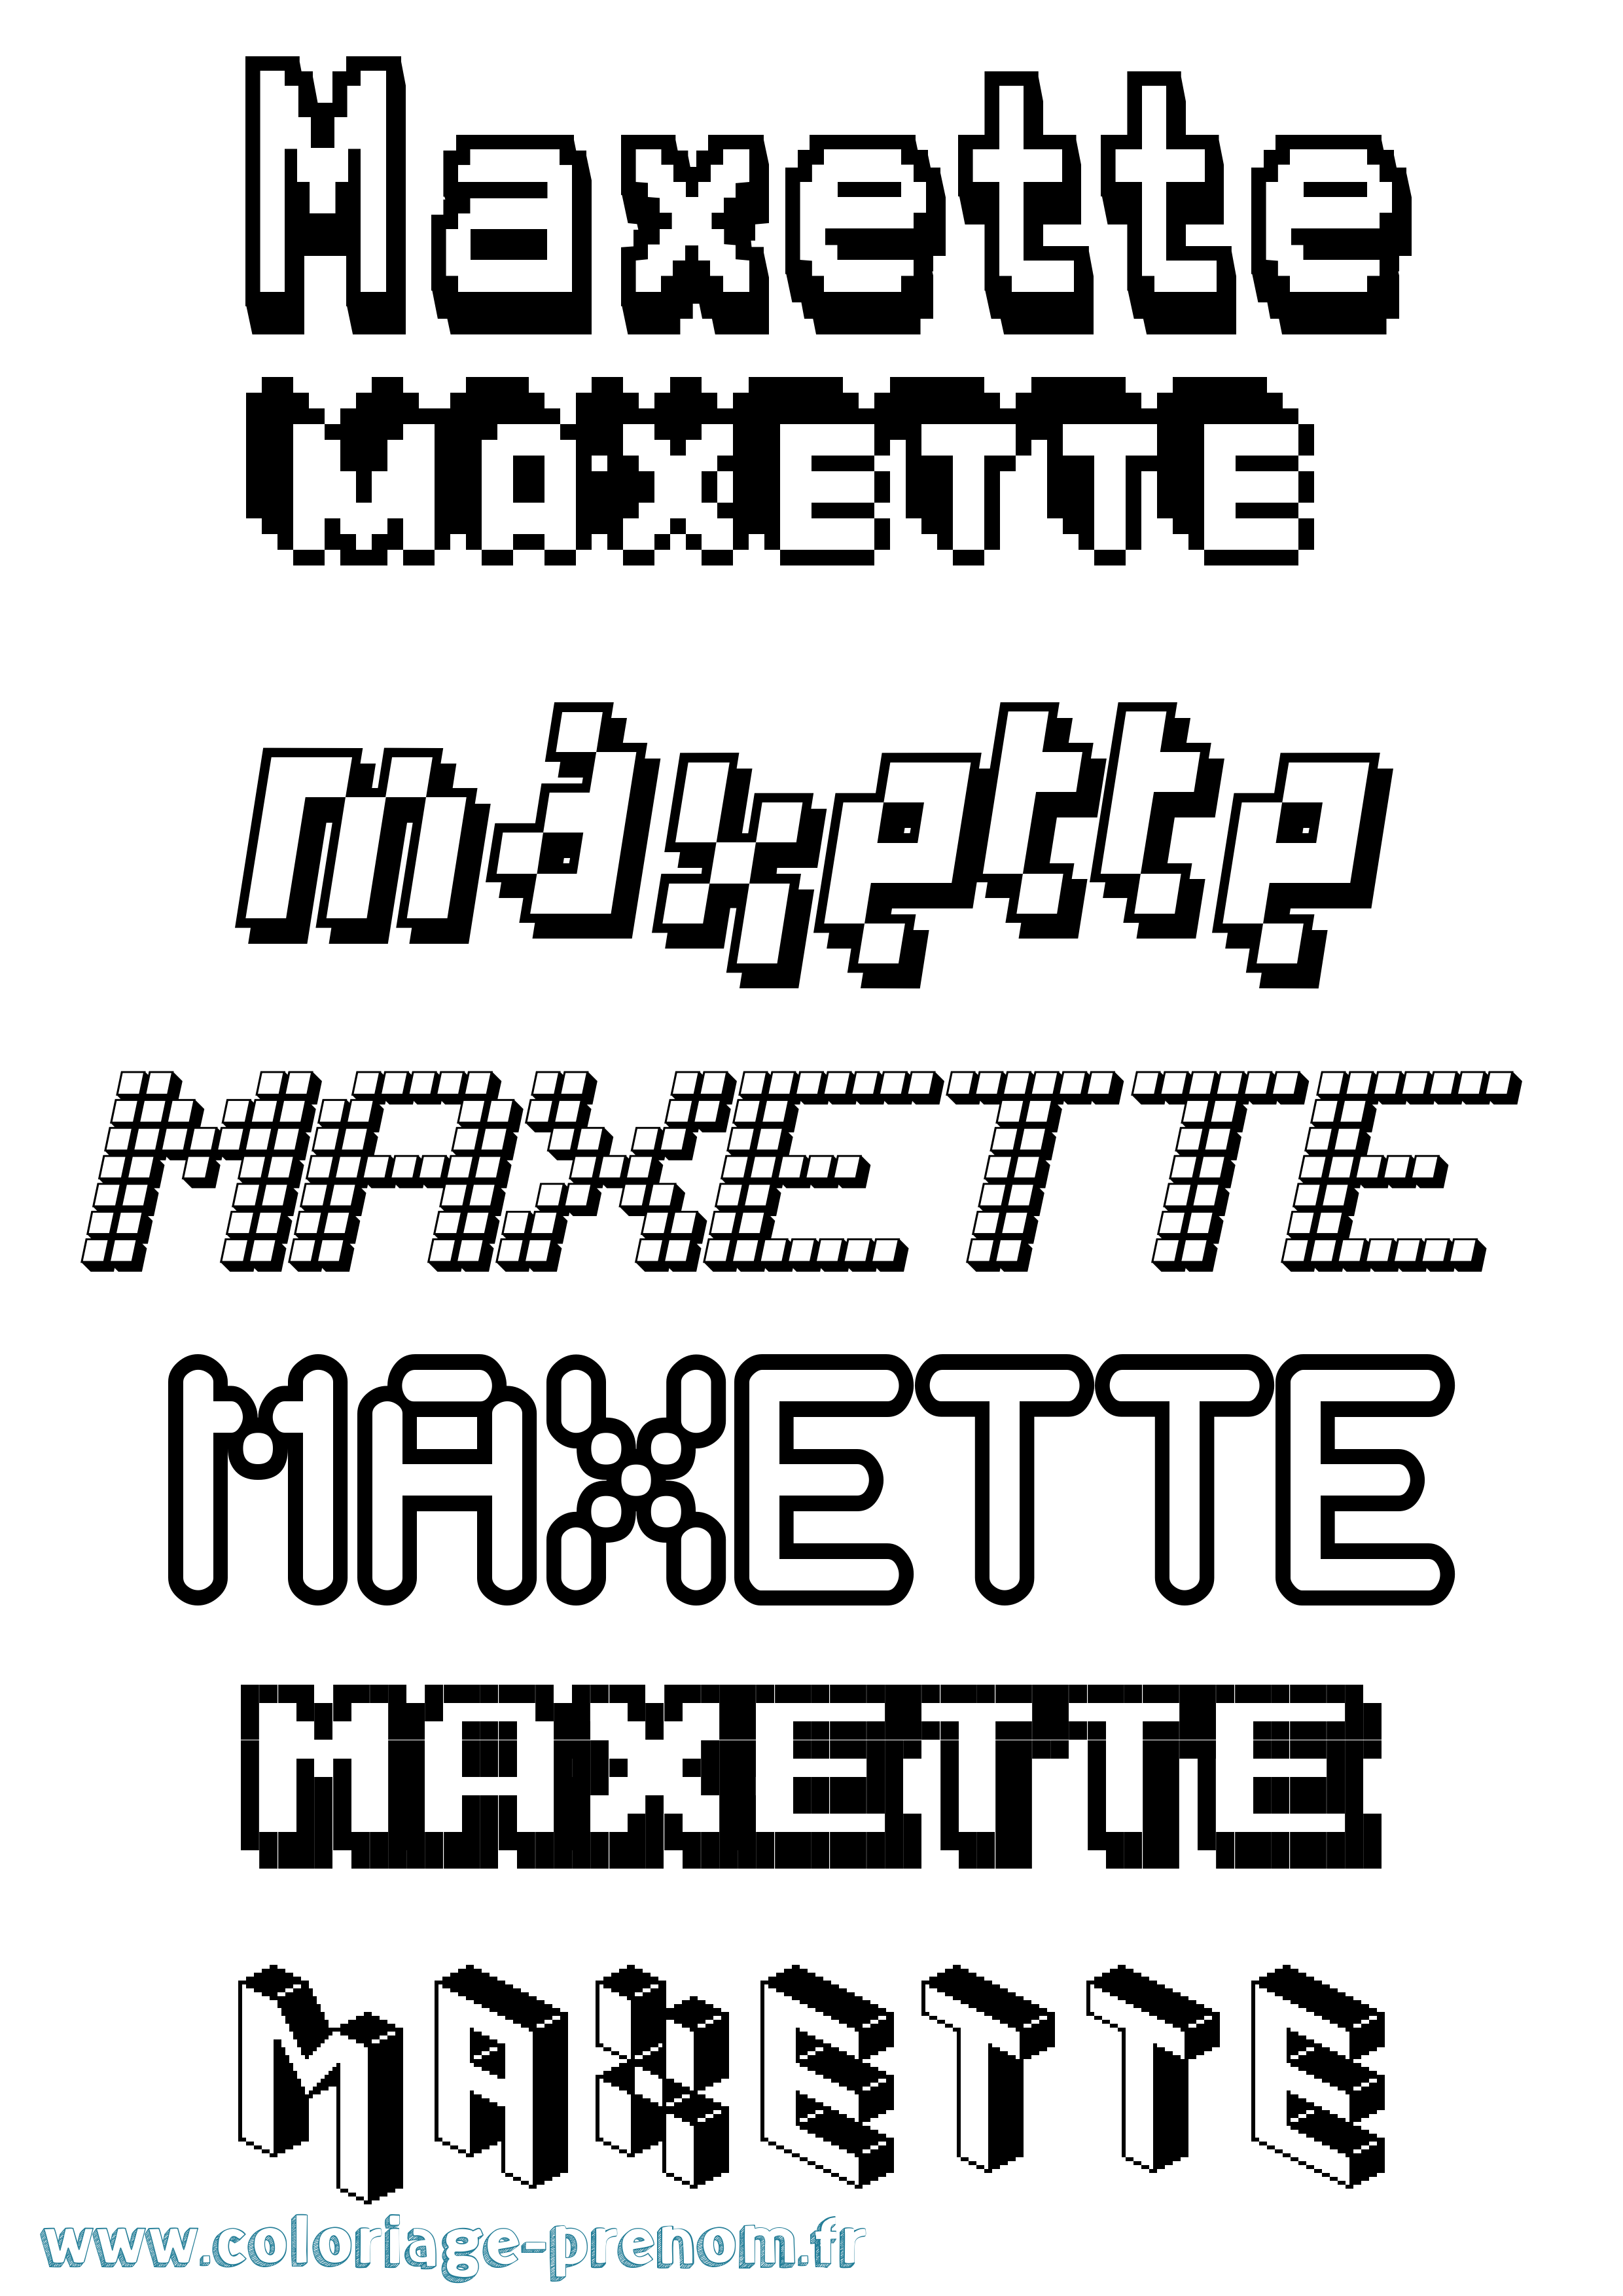 Coloriage prénom Maxette Pixel